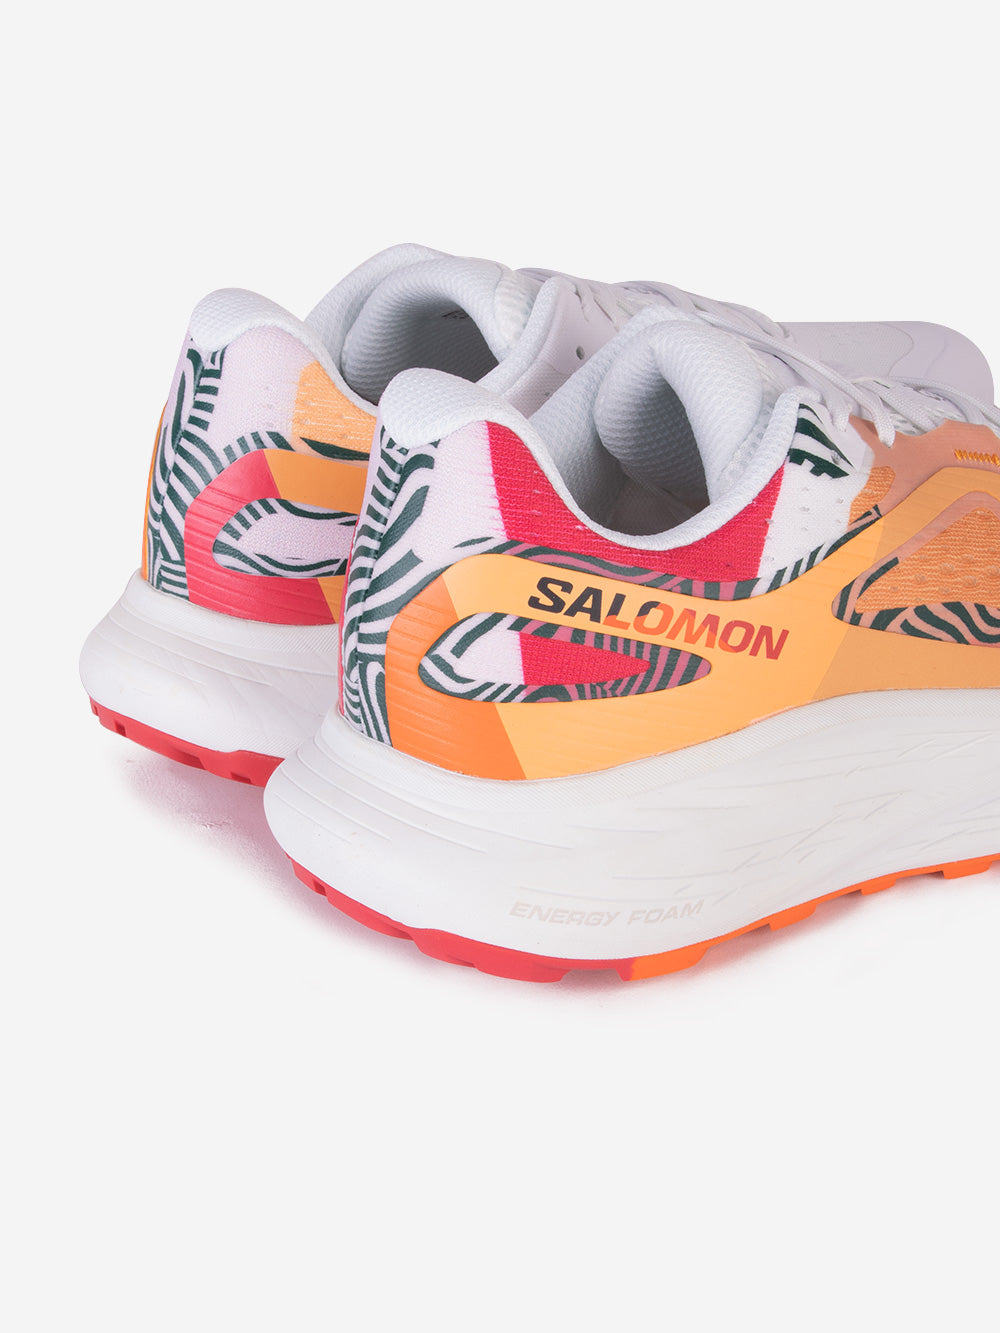 SALOMON Glide Max TR for CIELE Sneakers arancione Urbanstaroma